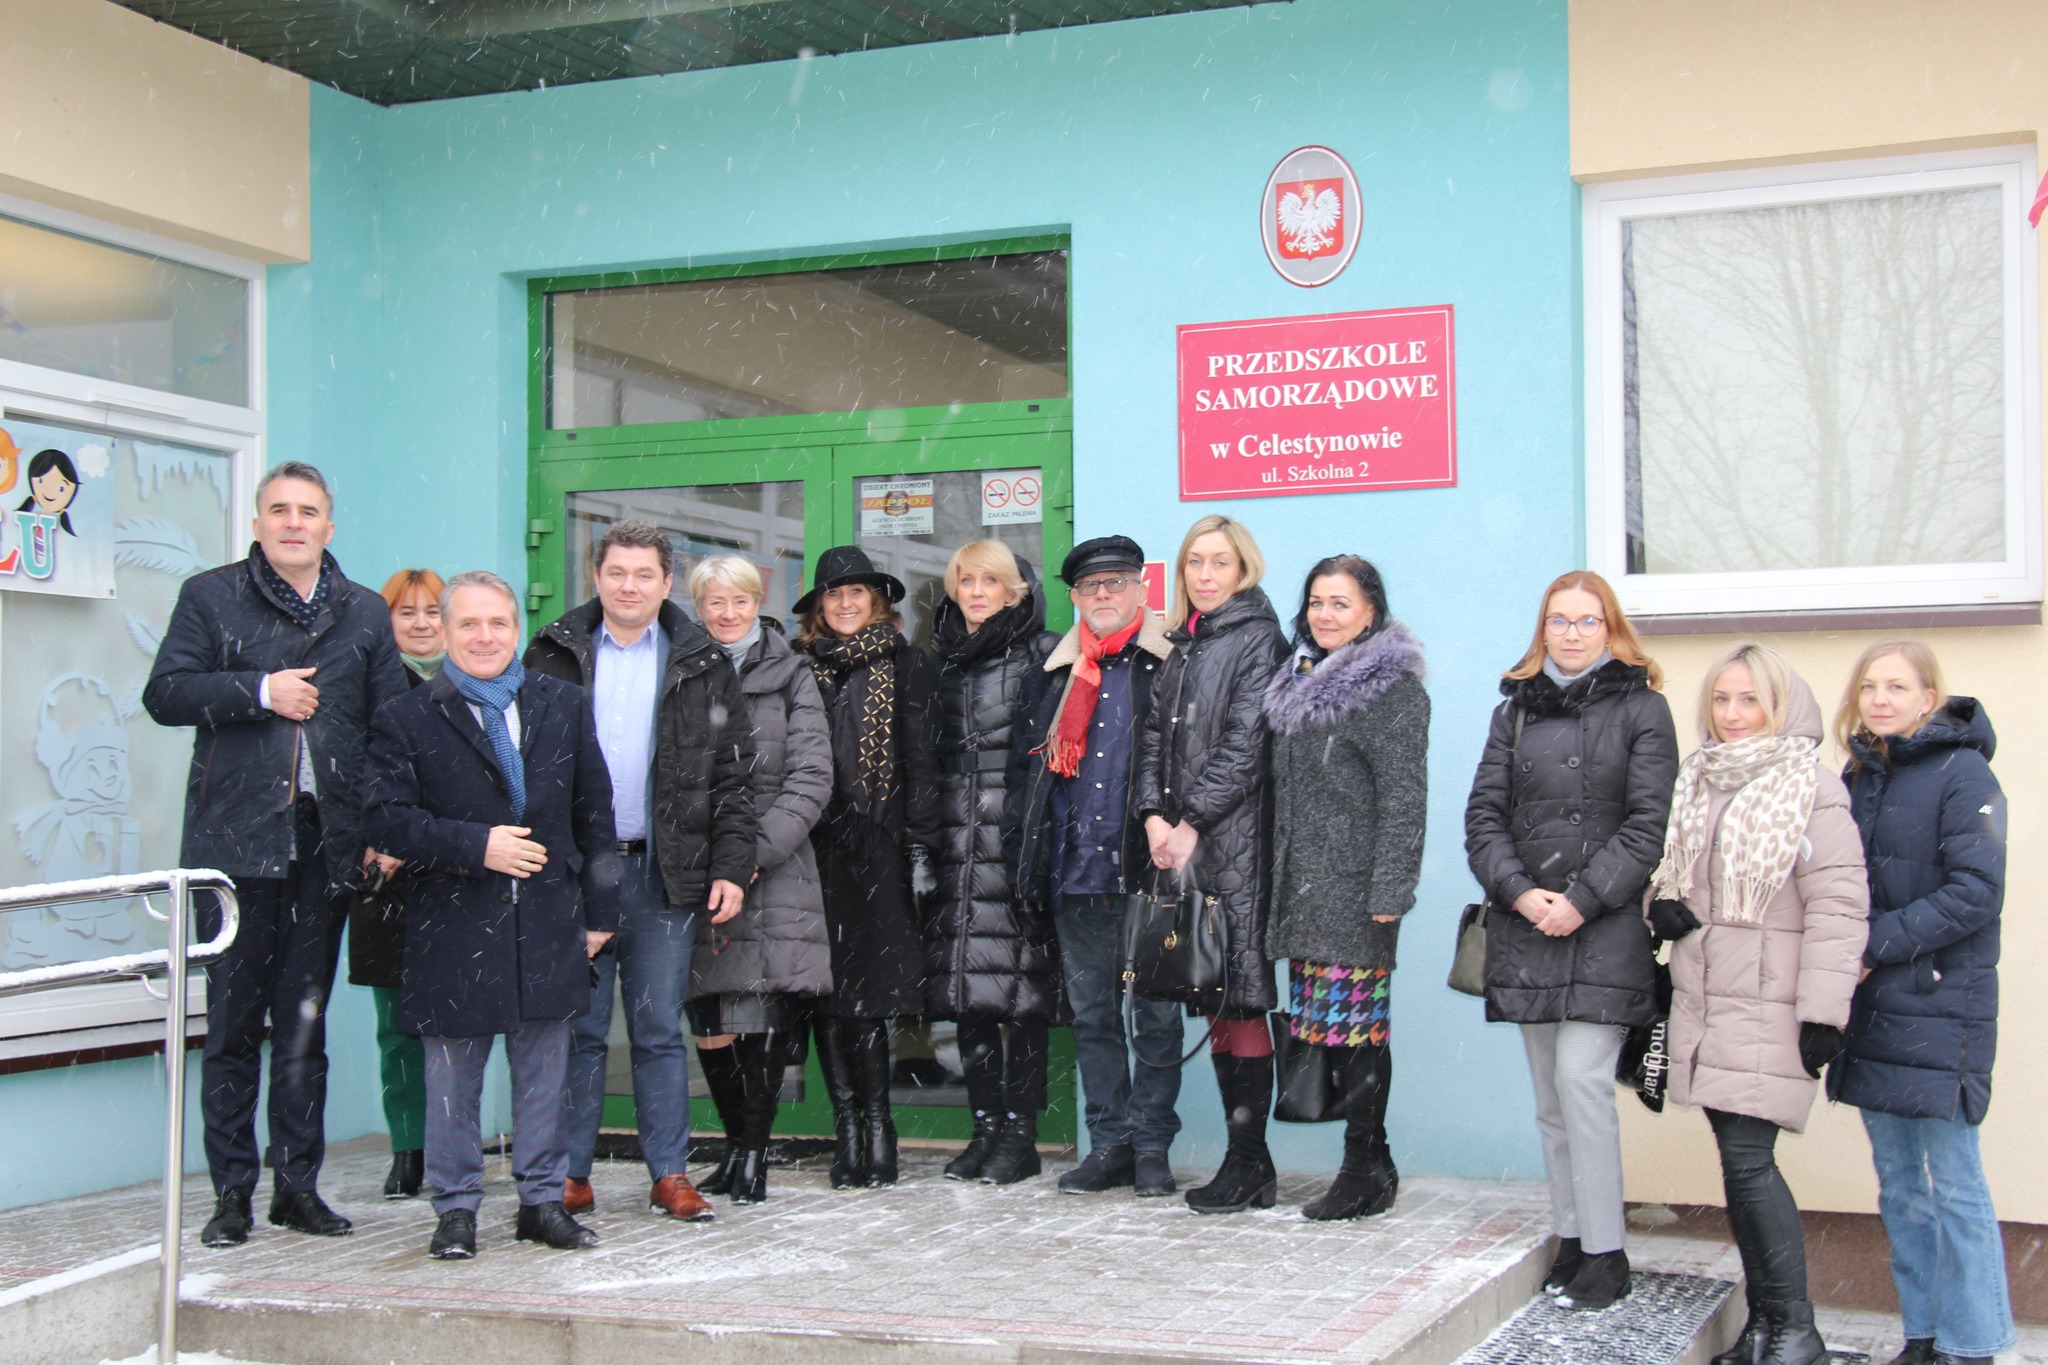 Przedstawiciele samorządów gminy Celestynów, urzędu Miasta Ostrów Mazowiecka stoją przed budynkiem przedszkola w Celestynowie